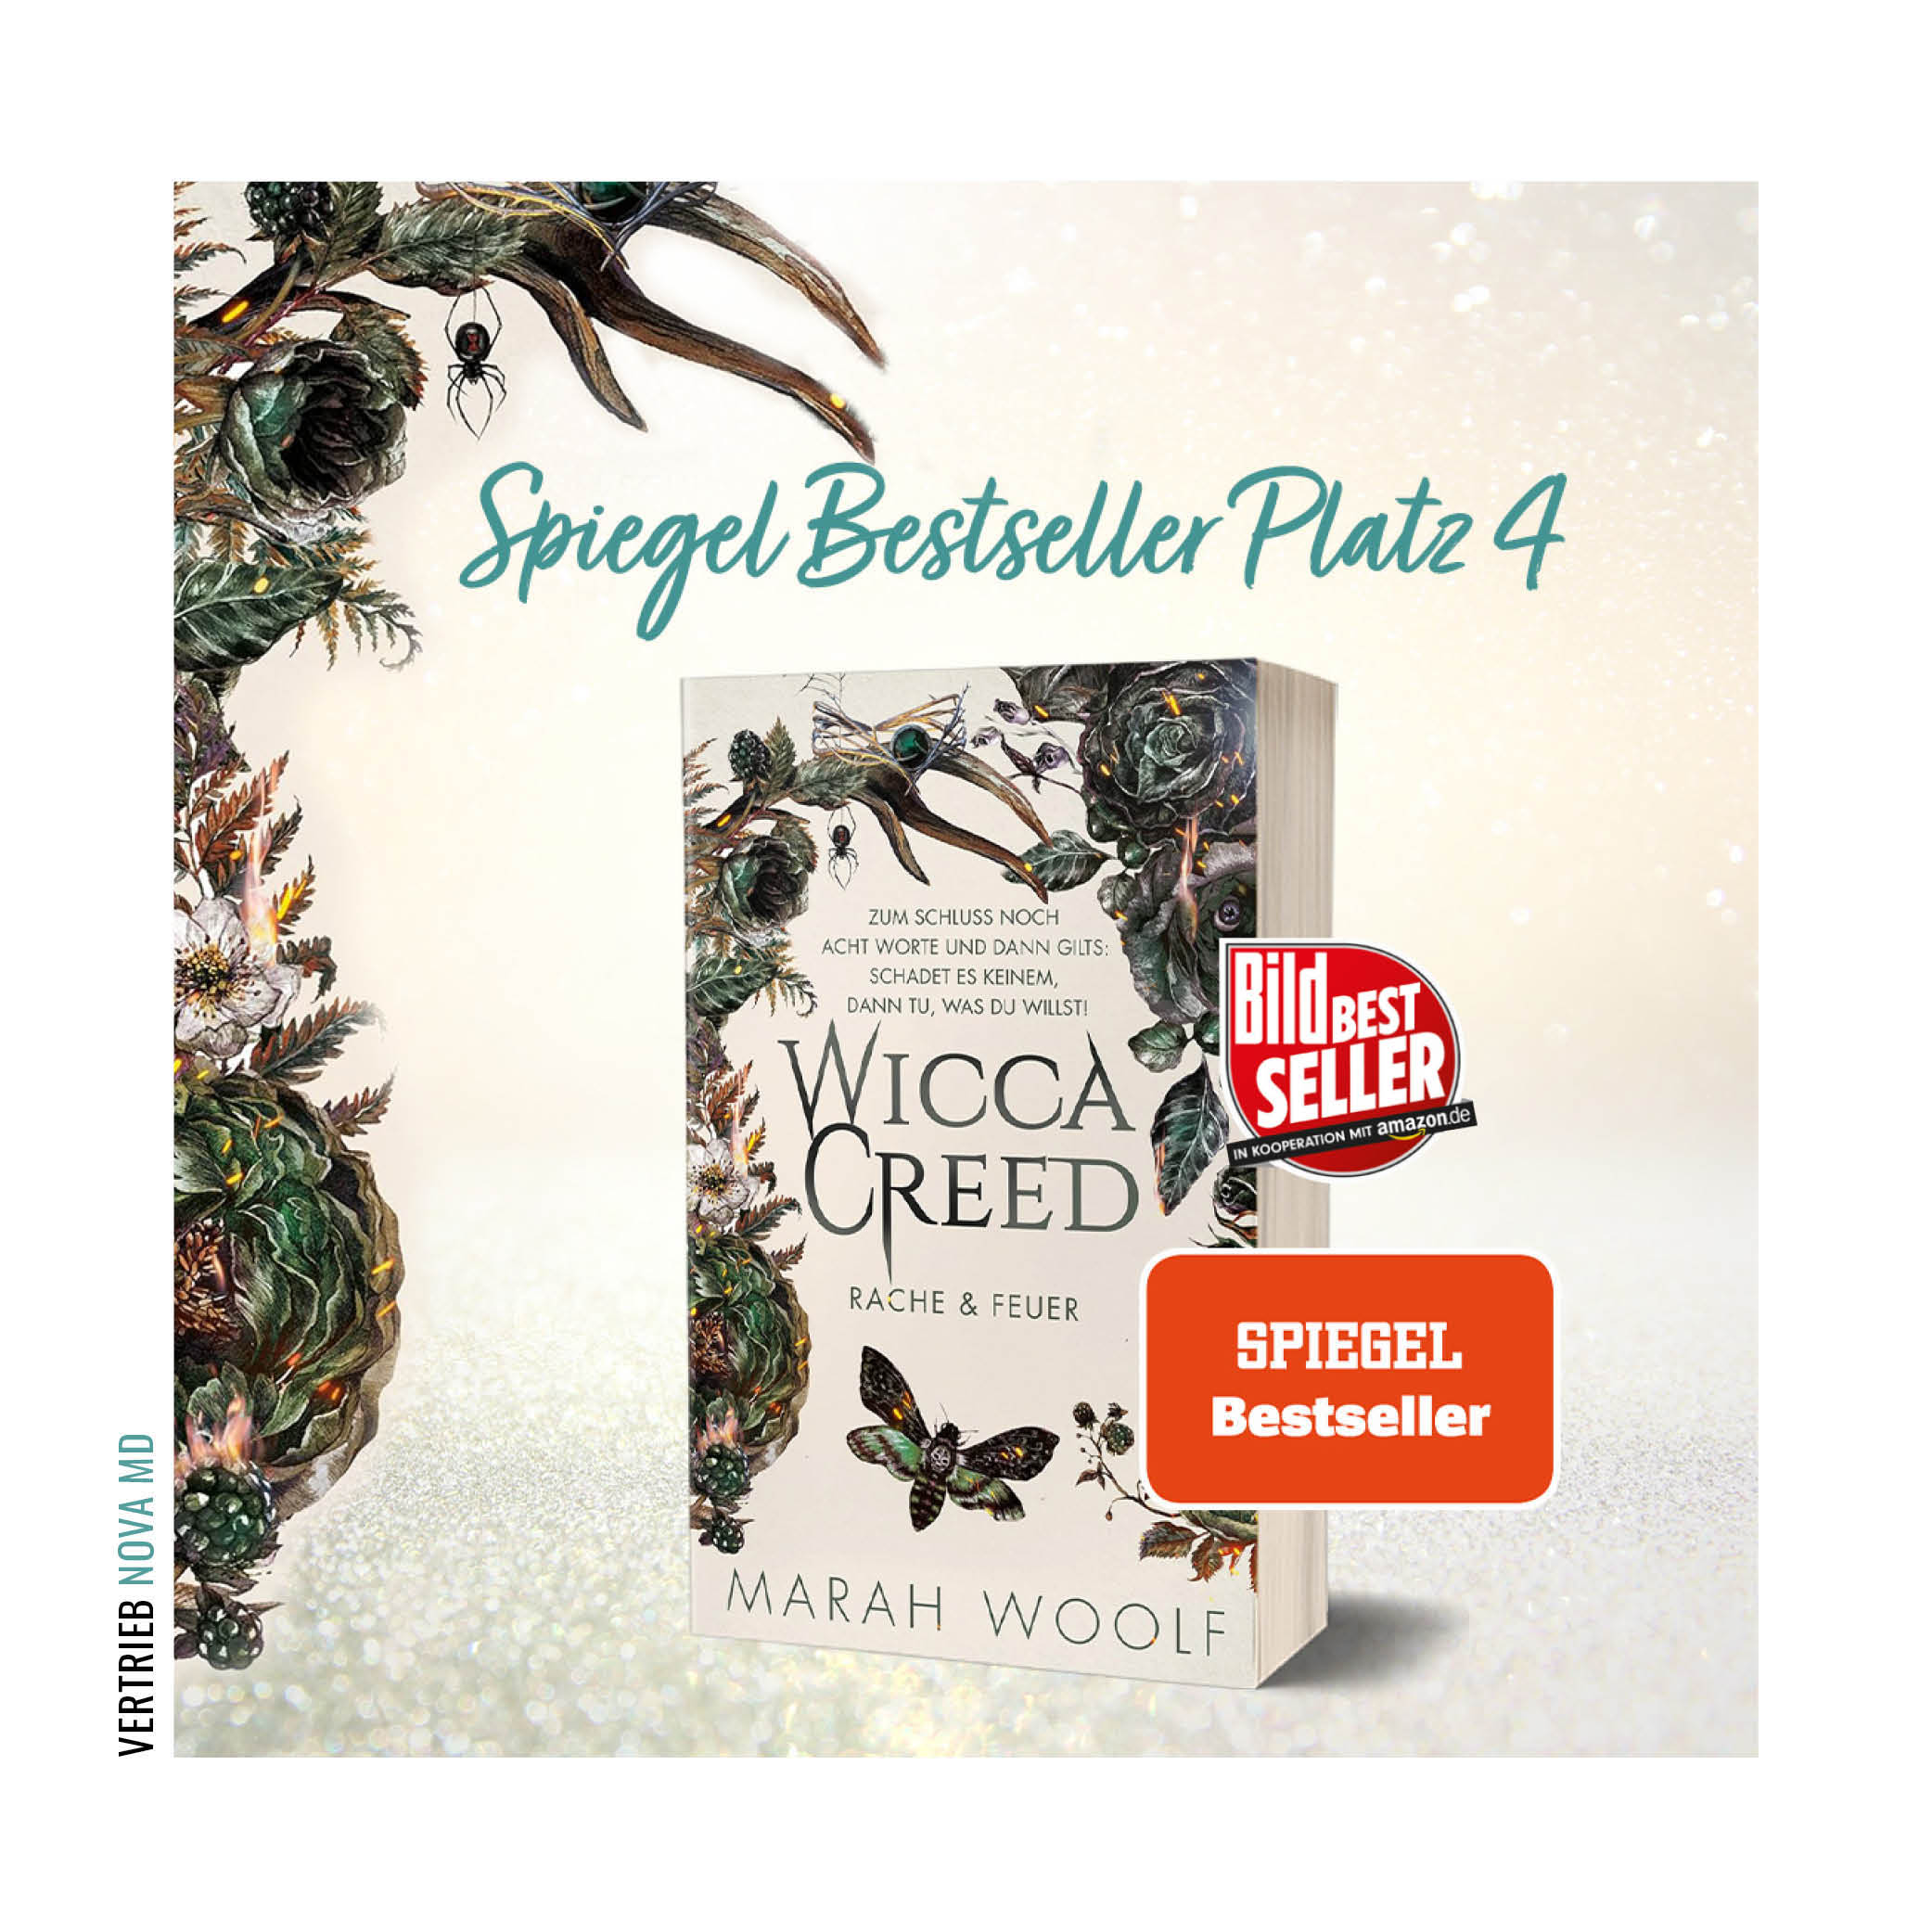 Cover von "WiccaCreed: Rache & Feuer" mit Spiegel und Bild Bestseller Auszeichnung